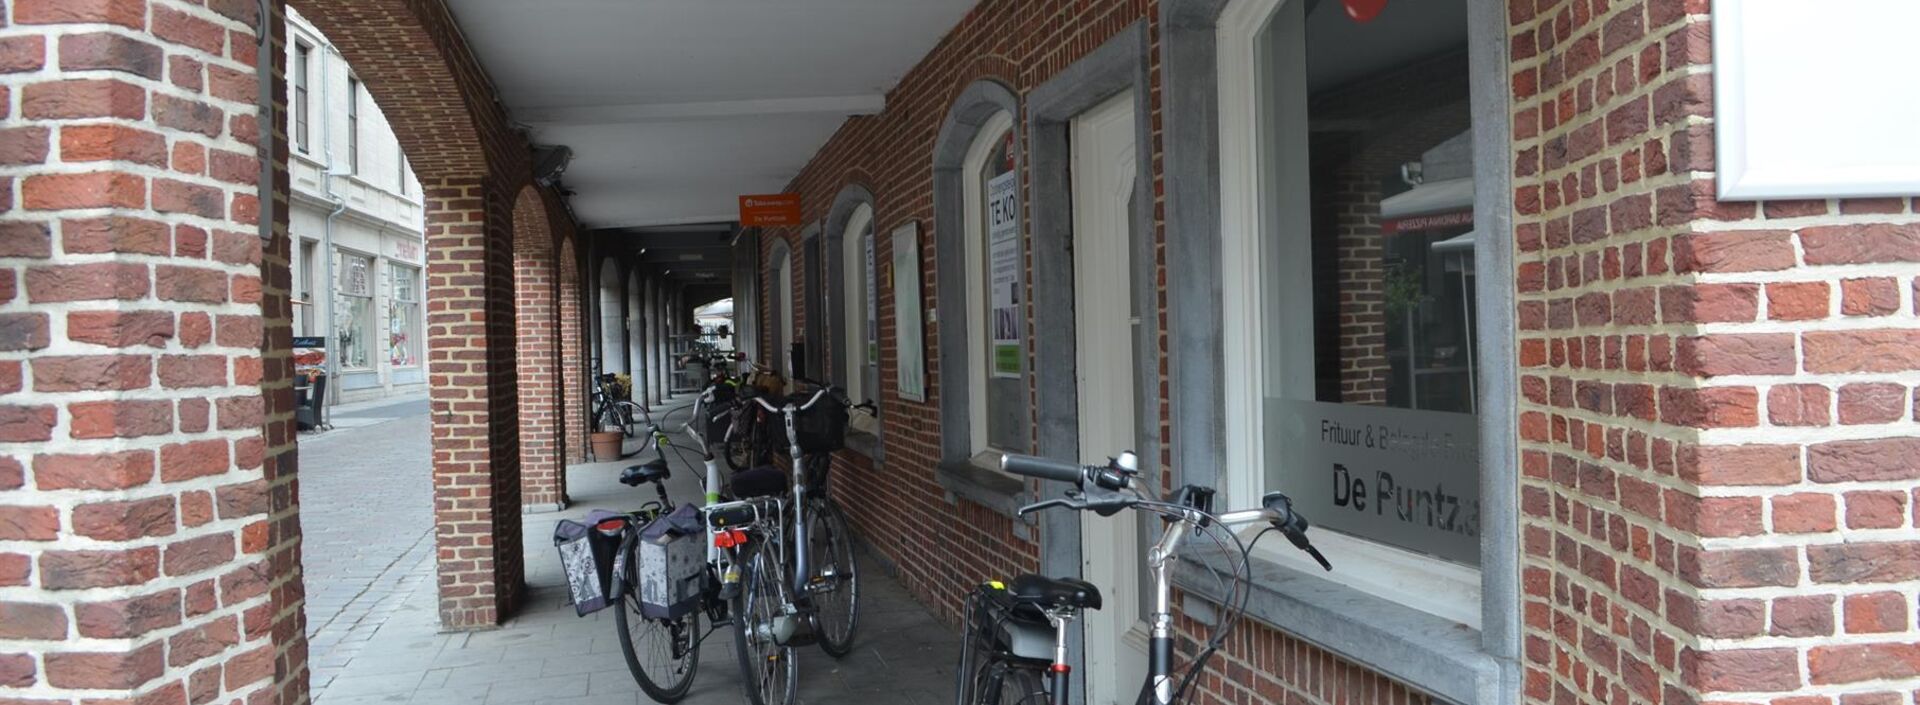 NL/EN
NL: Handelshuis met handelsgelijkvloers en 3 appartementen.
Dit goed is gelegen in het hartje van de uitgangsbuurt van Lier, kortom een toplocatie!
Het betreft een statig gebouw, waarvan de 3 bovenliggende appartementen gerenoveerd werden.
De handel